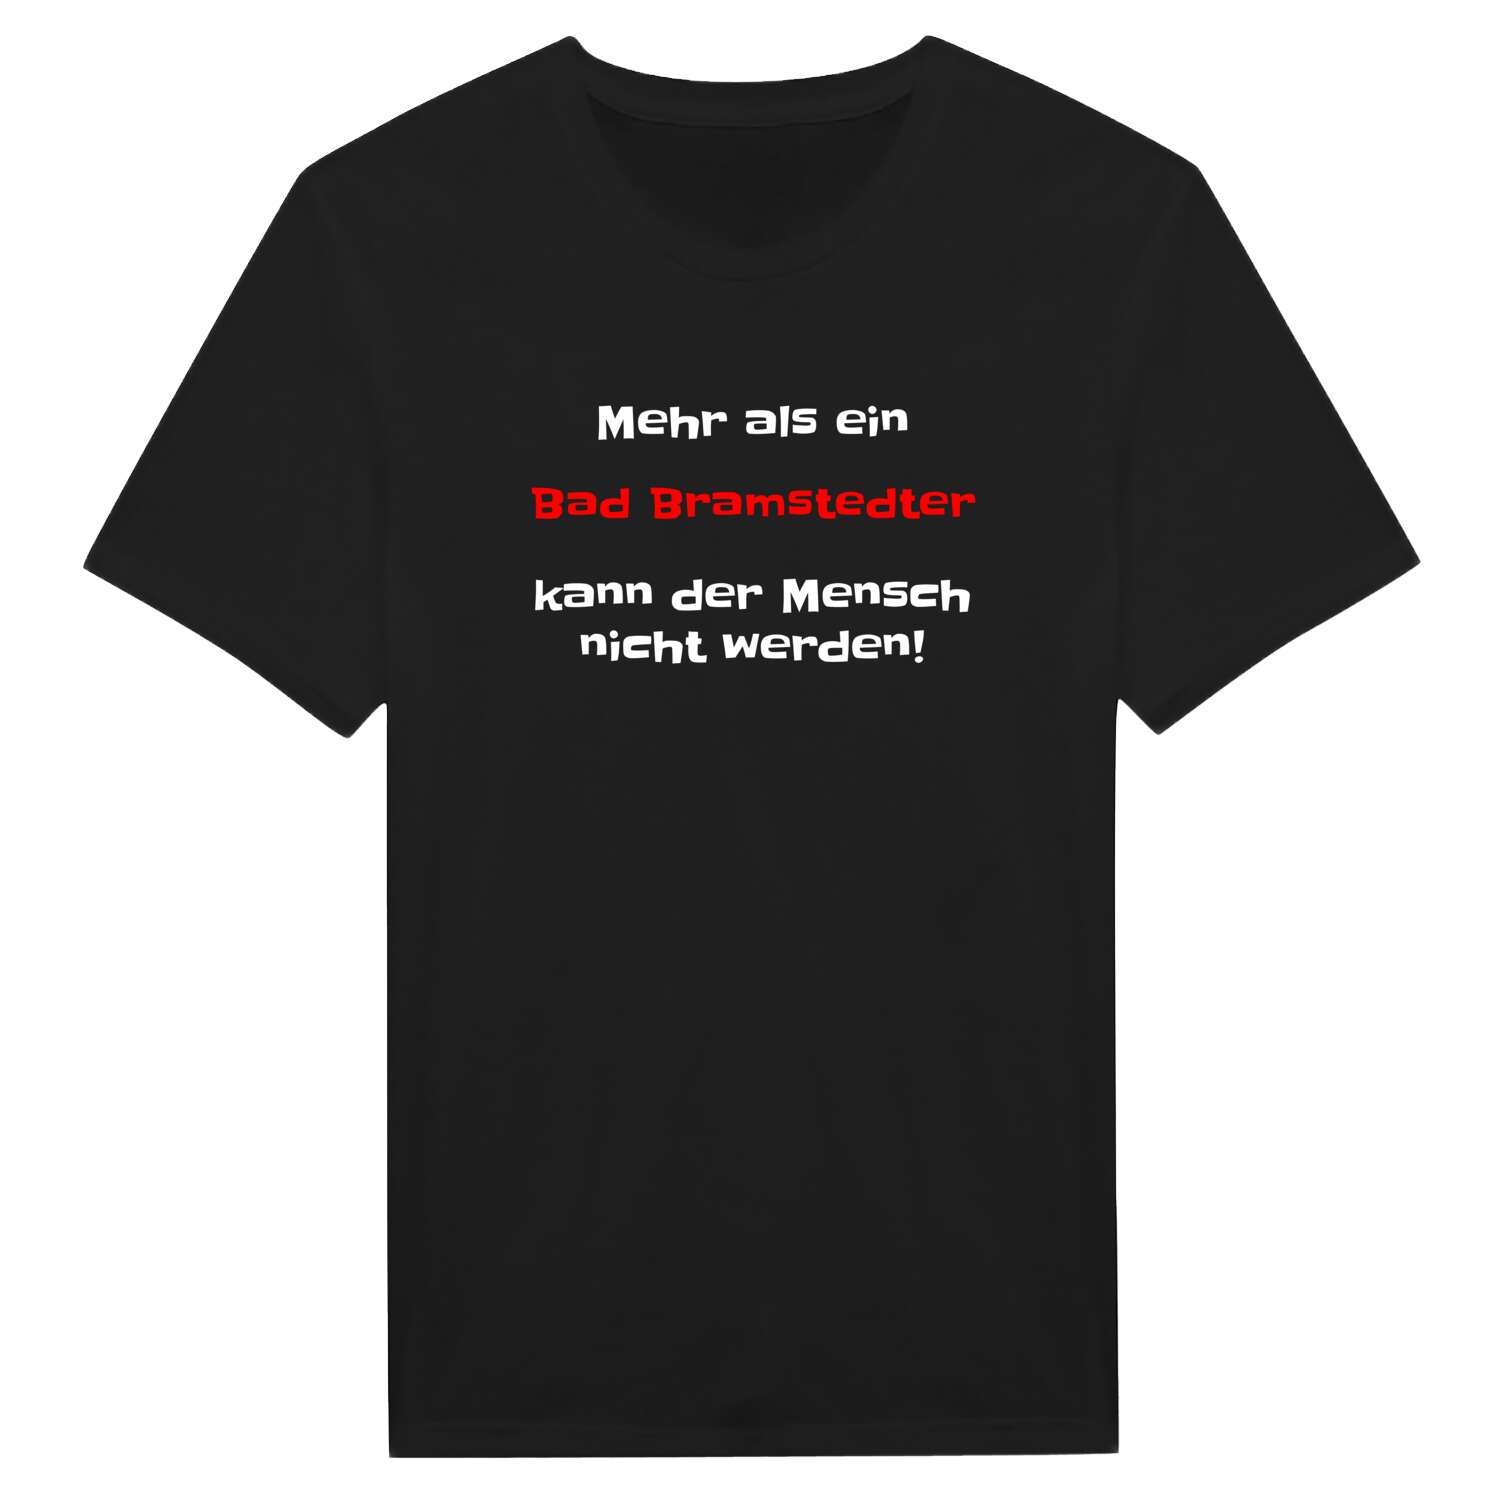 Bad Bramstedt T-Shirt »Mehr als ein«